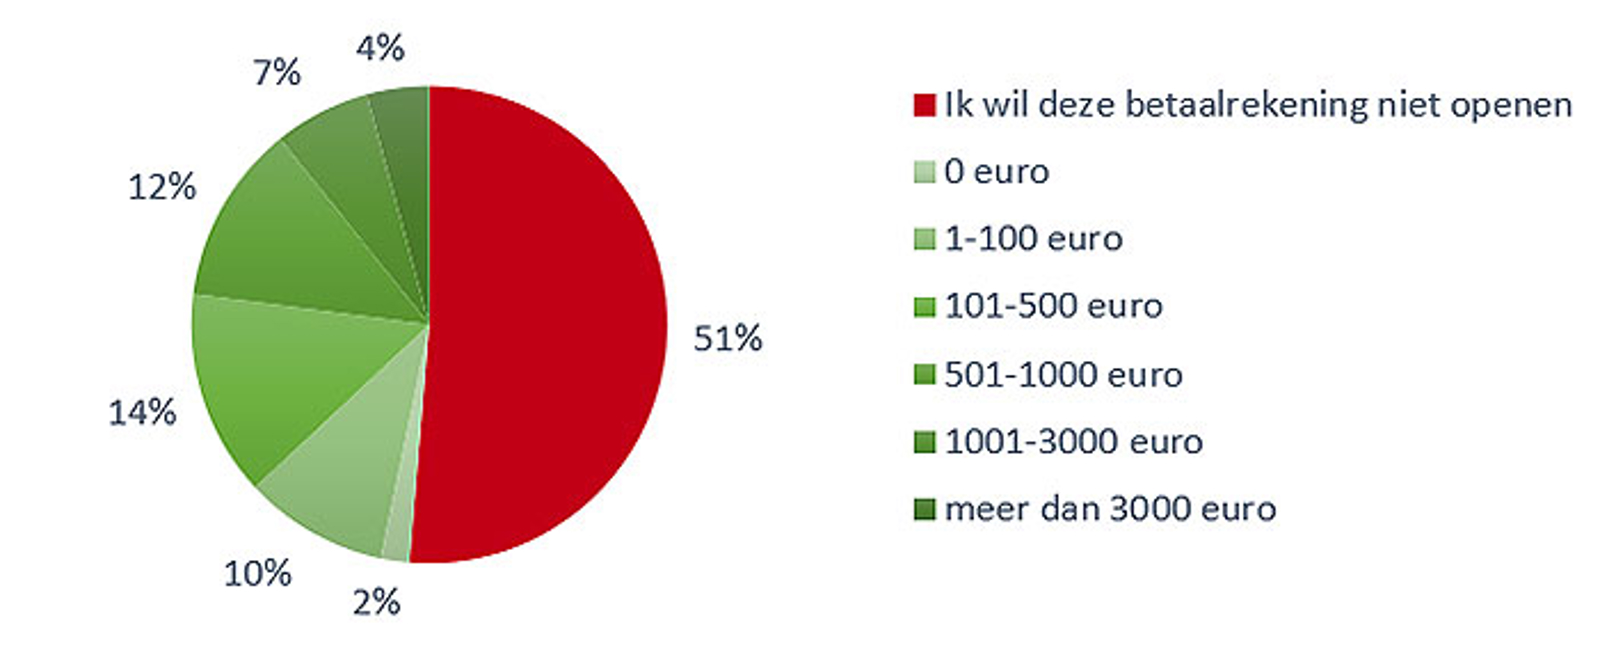 Interesse in betaalrekening voor digitale euro’s (antwoordaandelen)